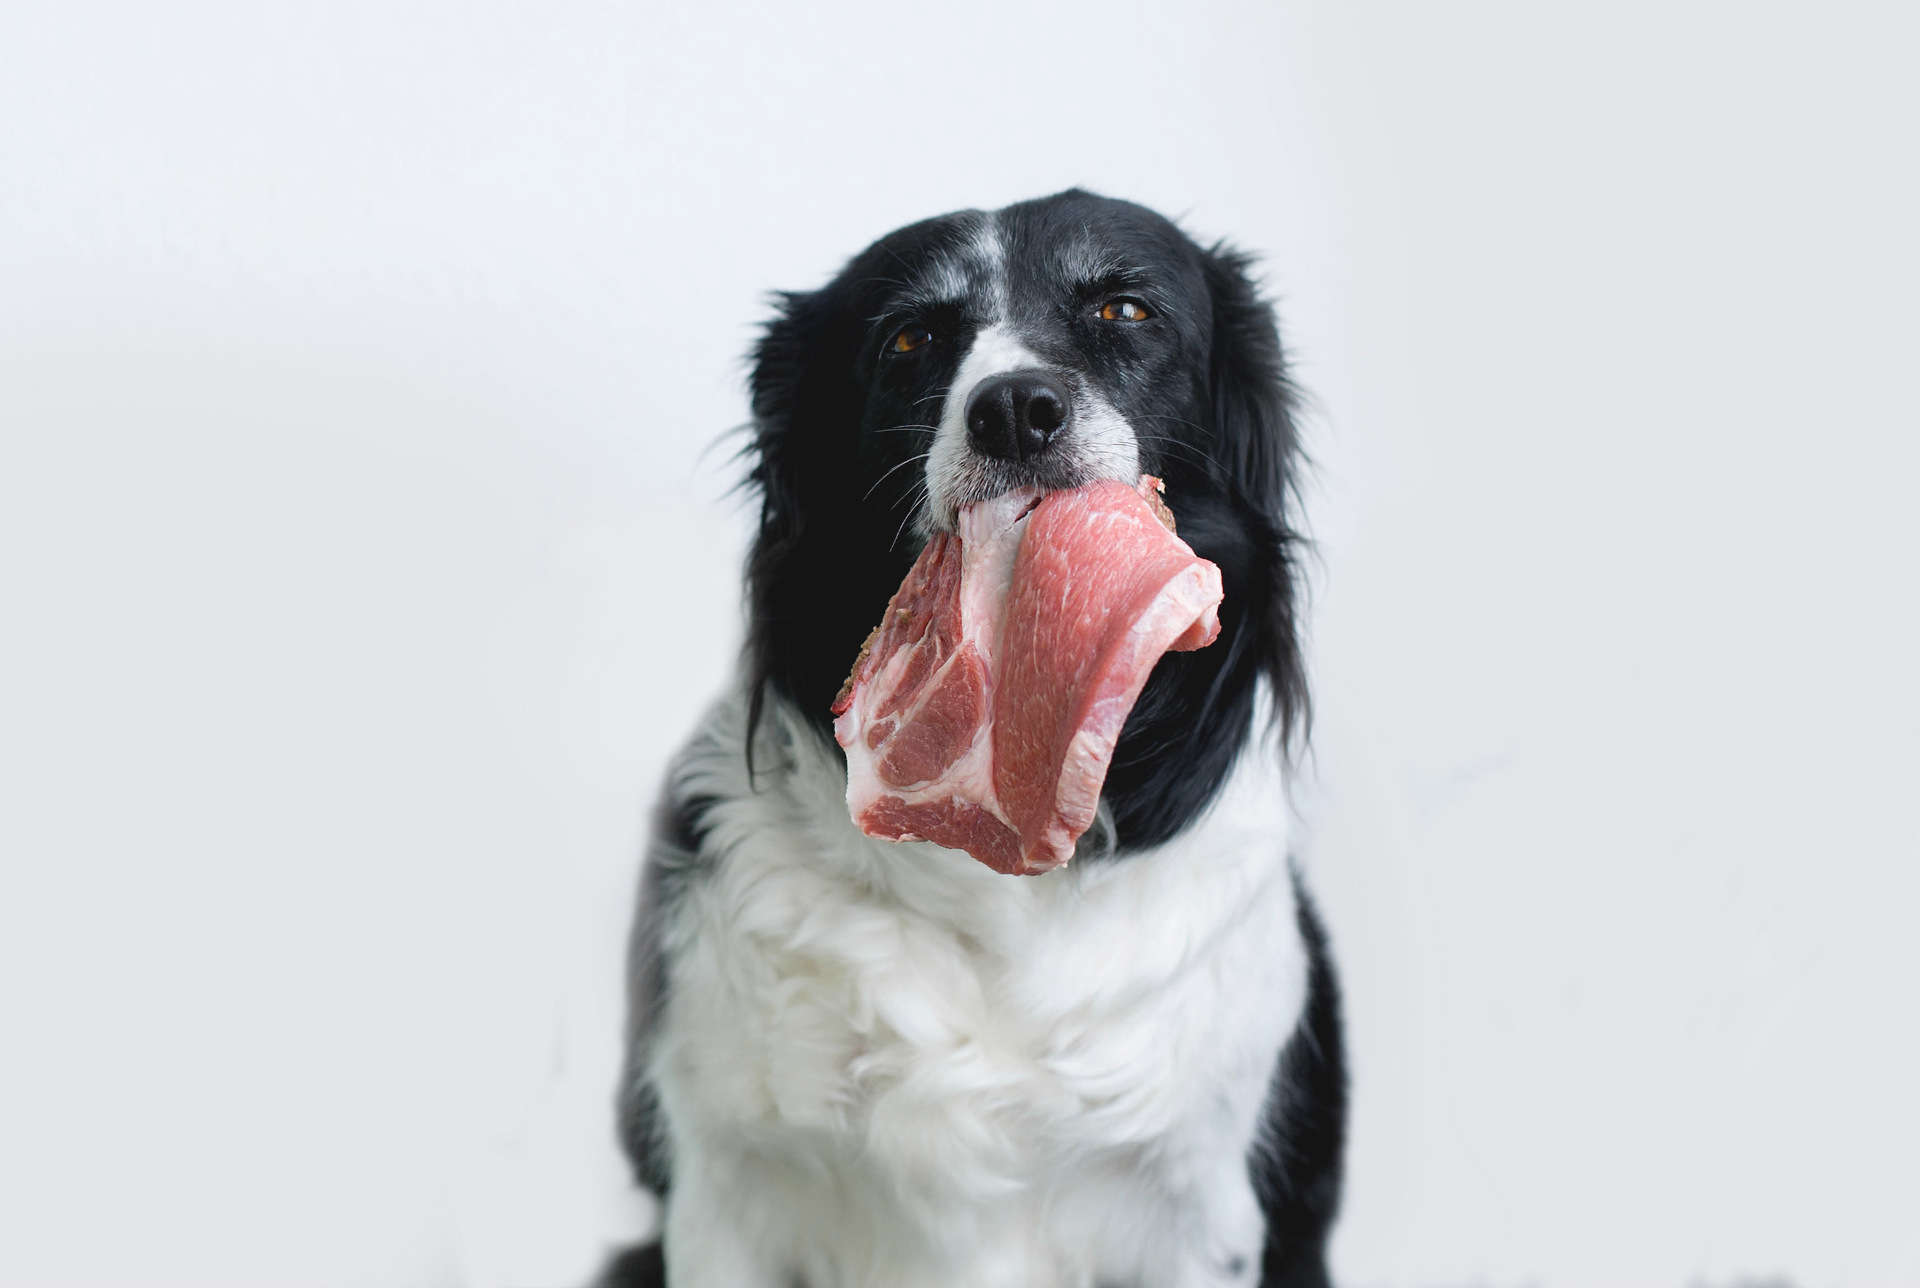 Czy pies może jeść surowe mięso